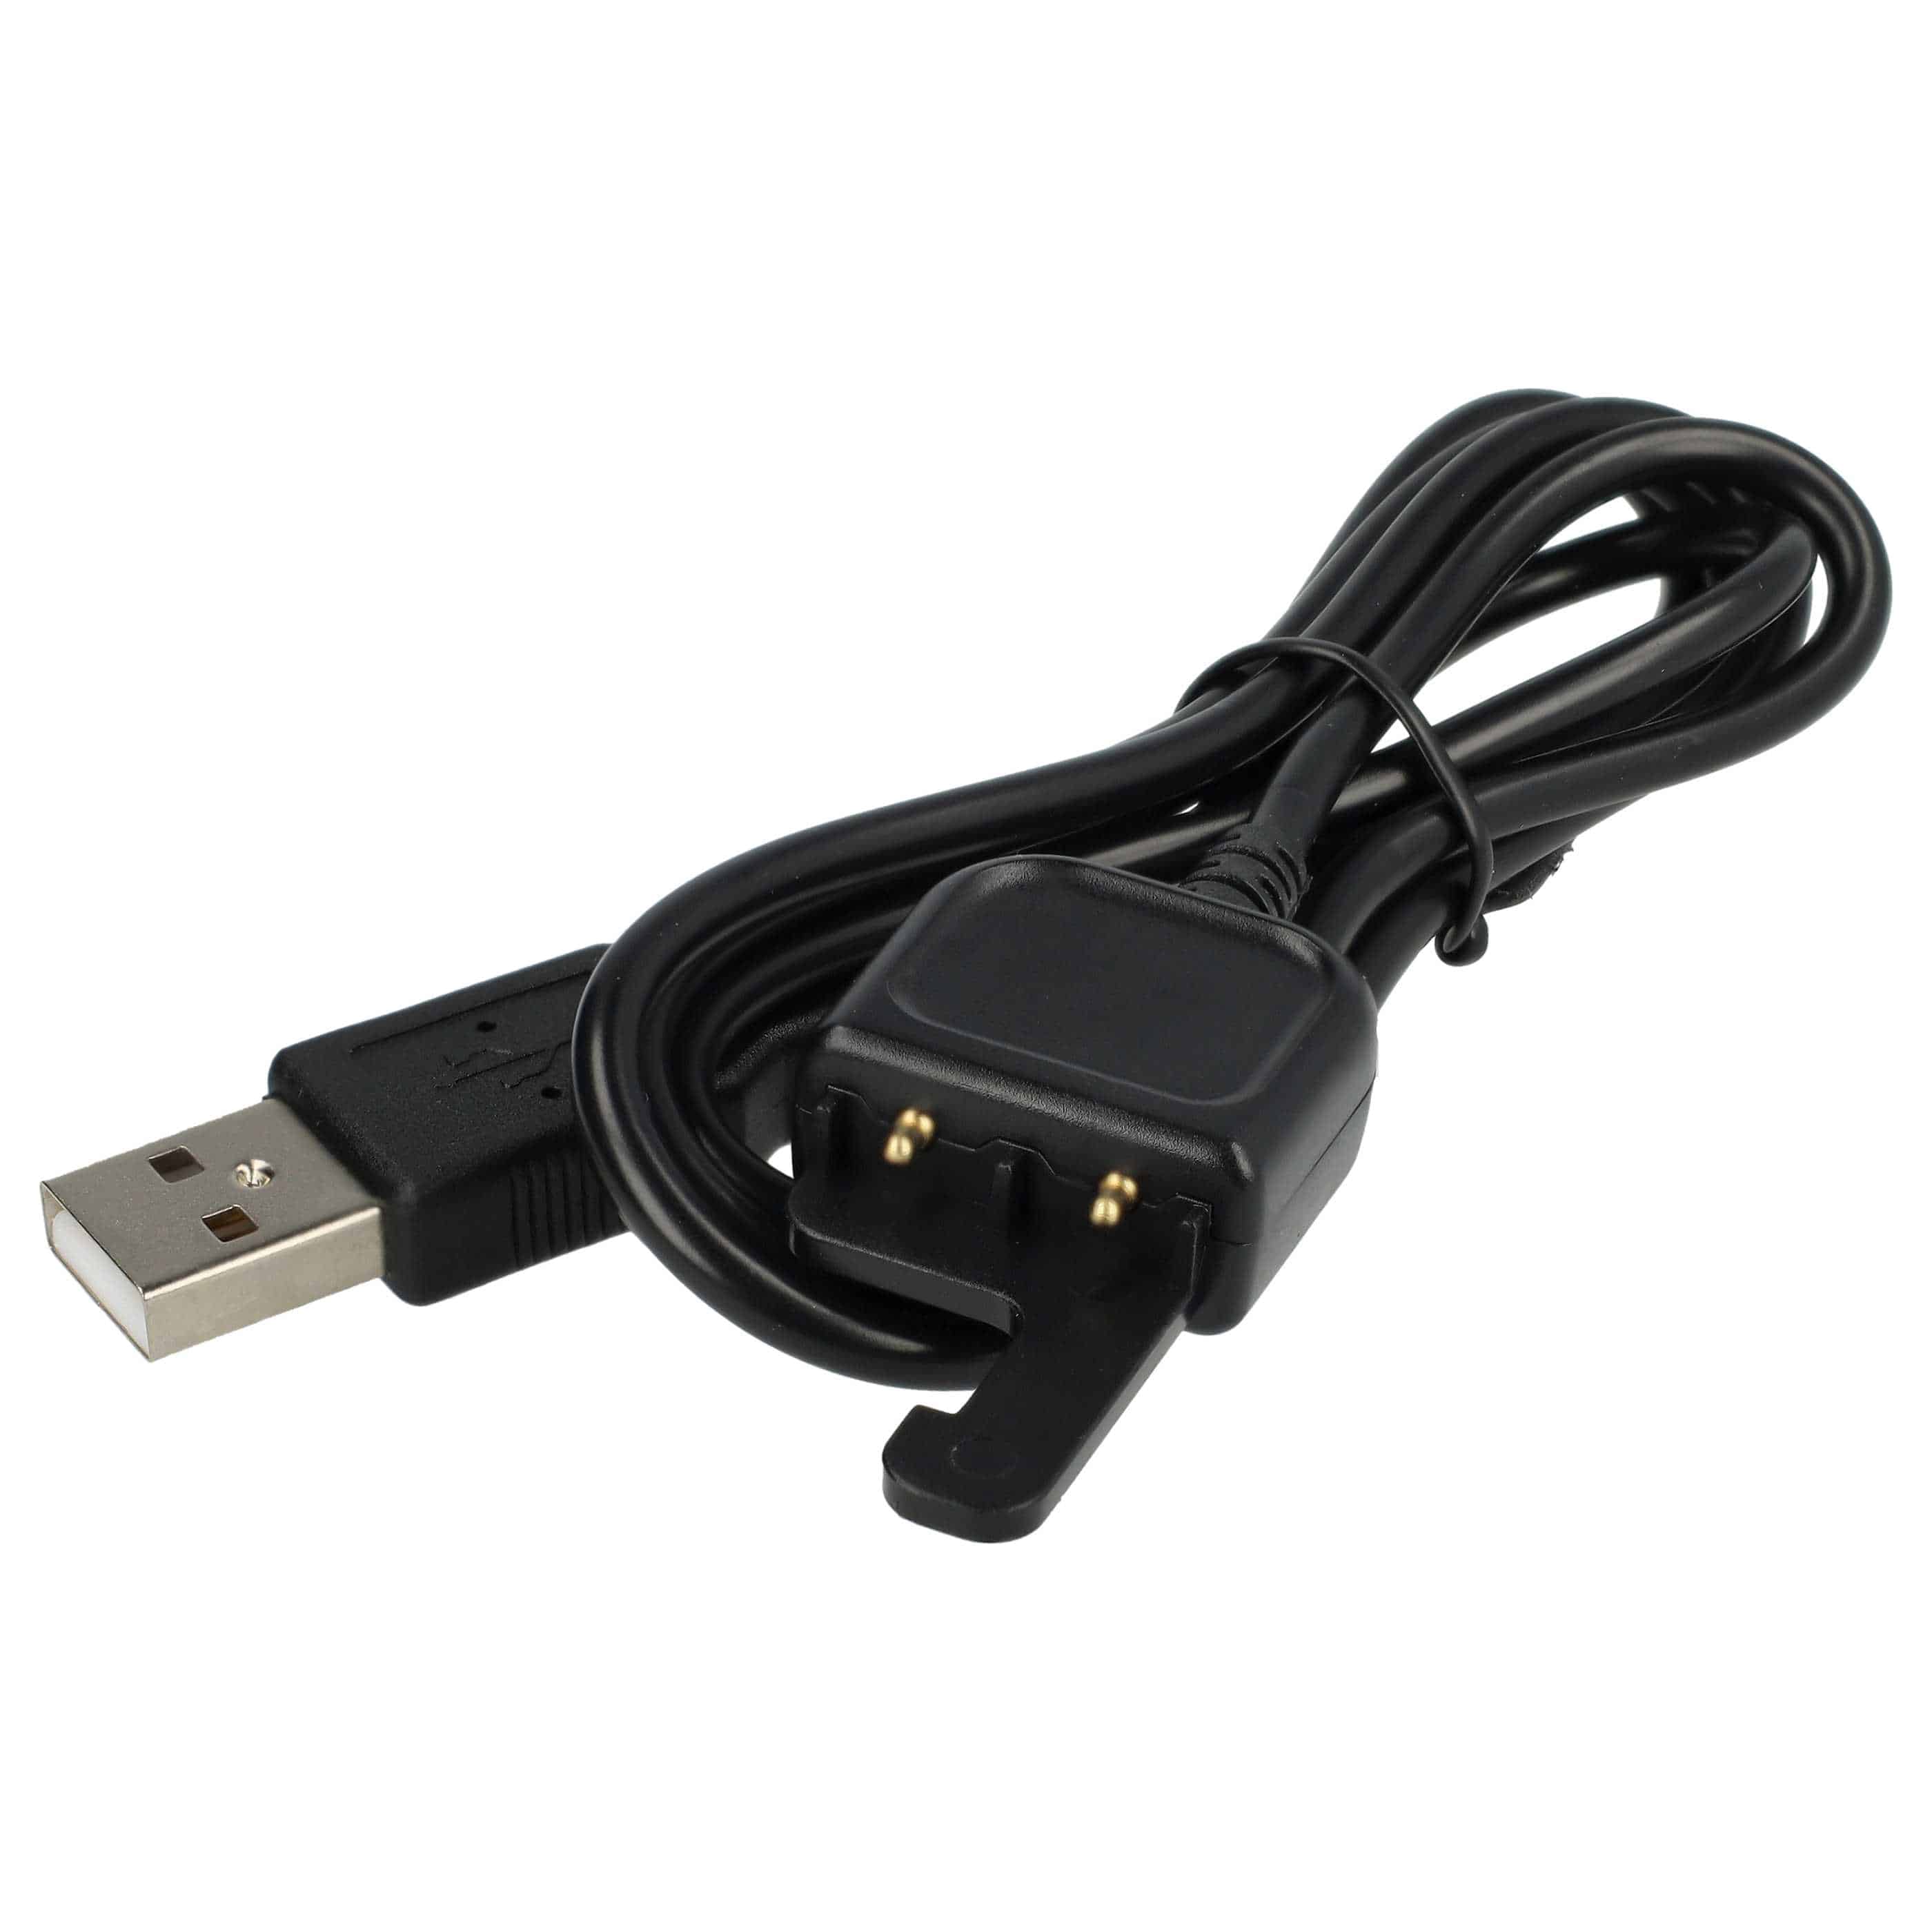 USB Kabel als Ersatz für AWRCC-001 für GoPro Fernbedienung - Ladekabel, 50 cm, Schwarz